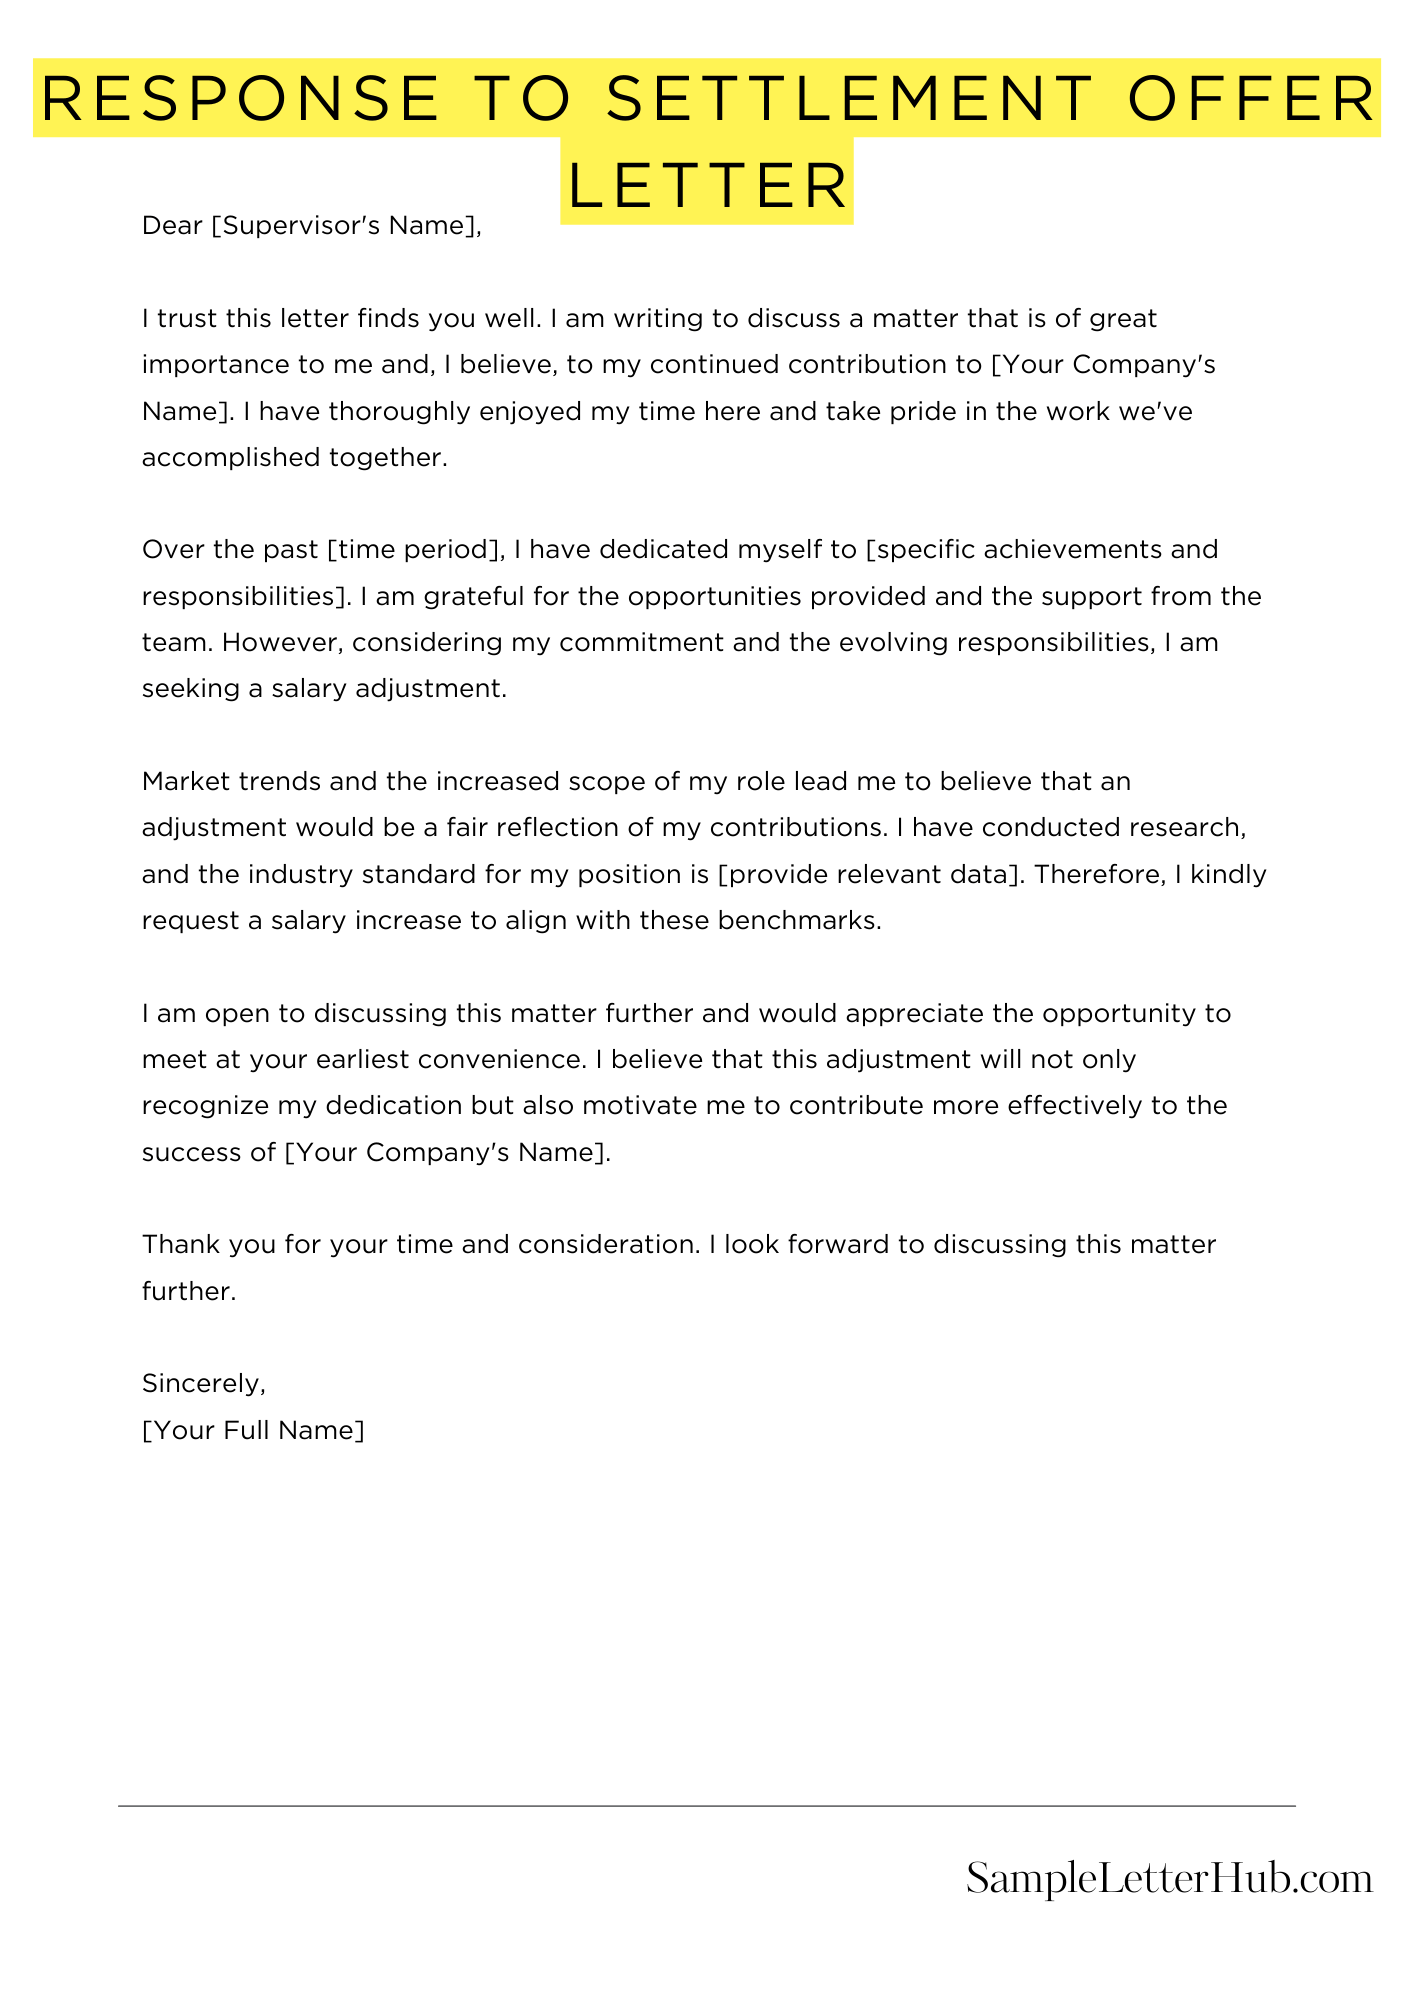 Response To Settlement Offer Letter